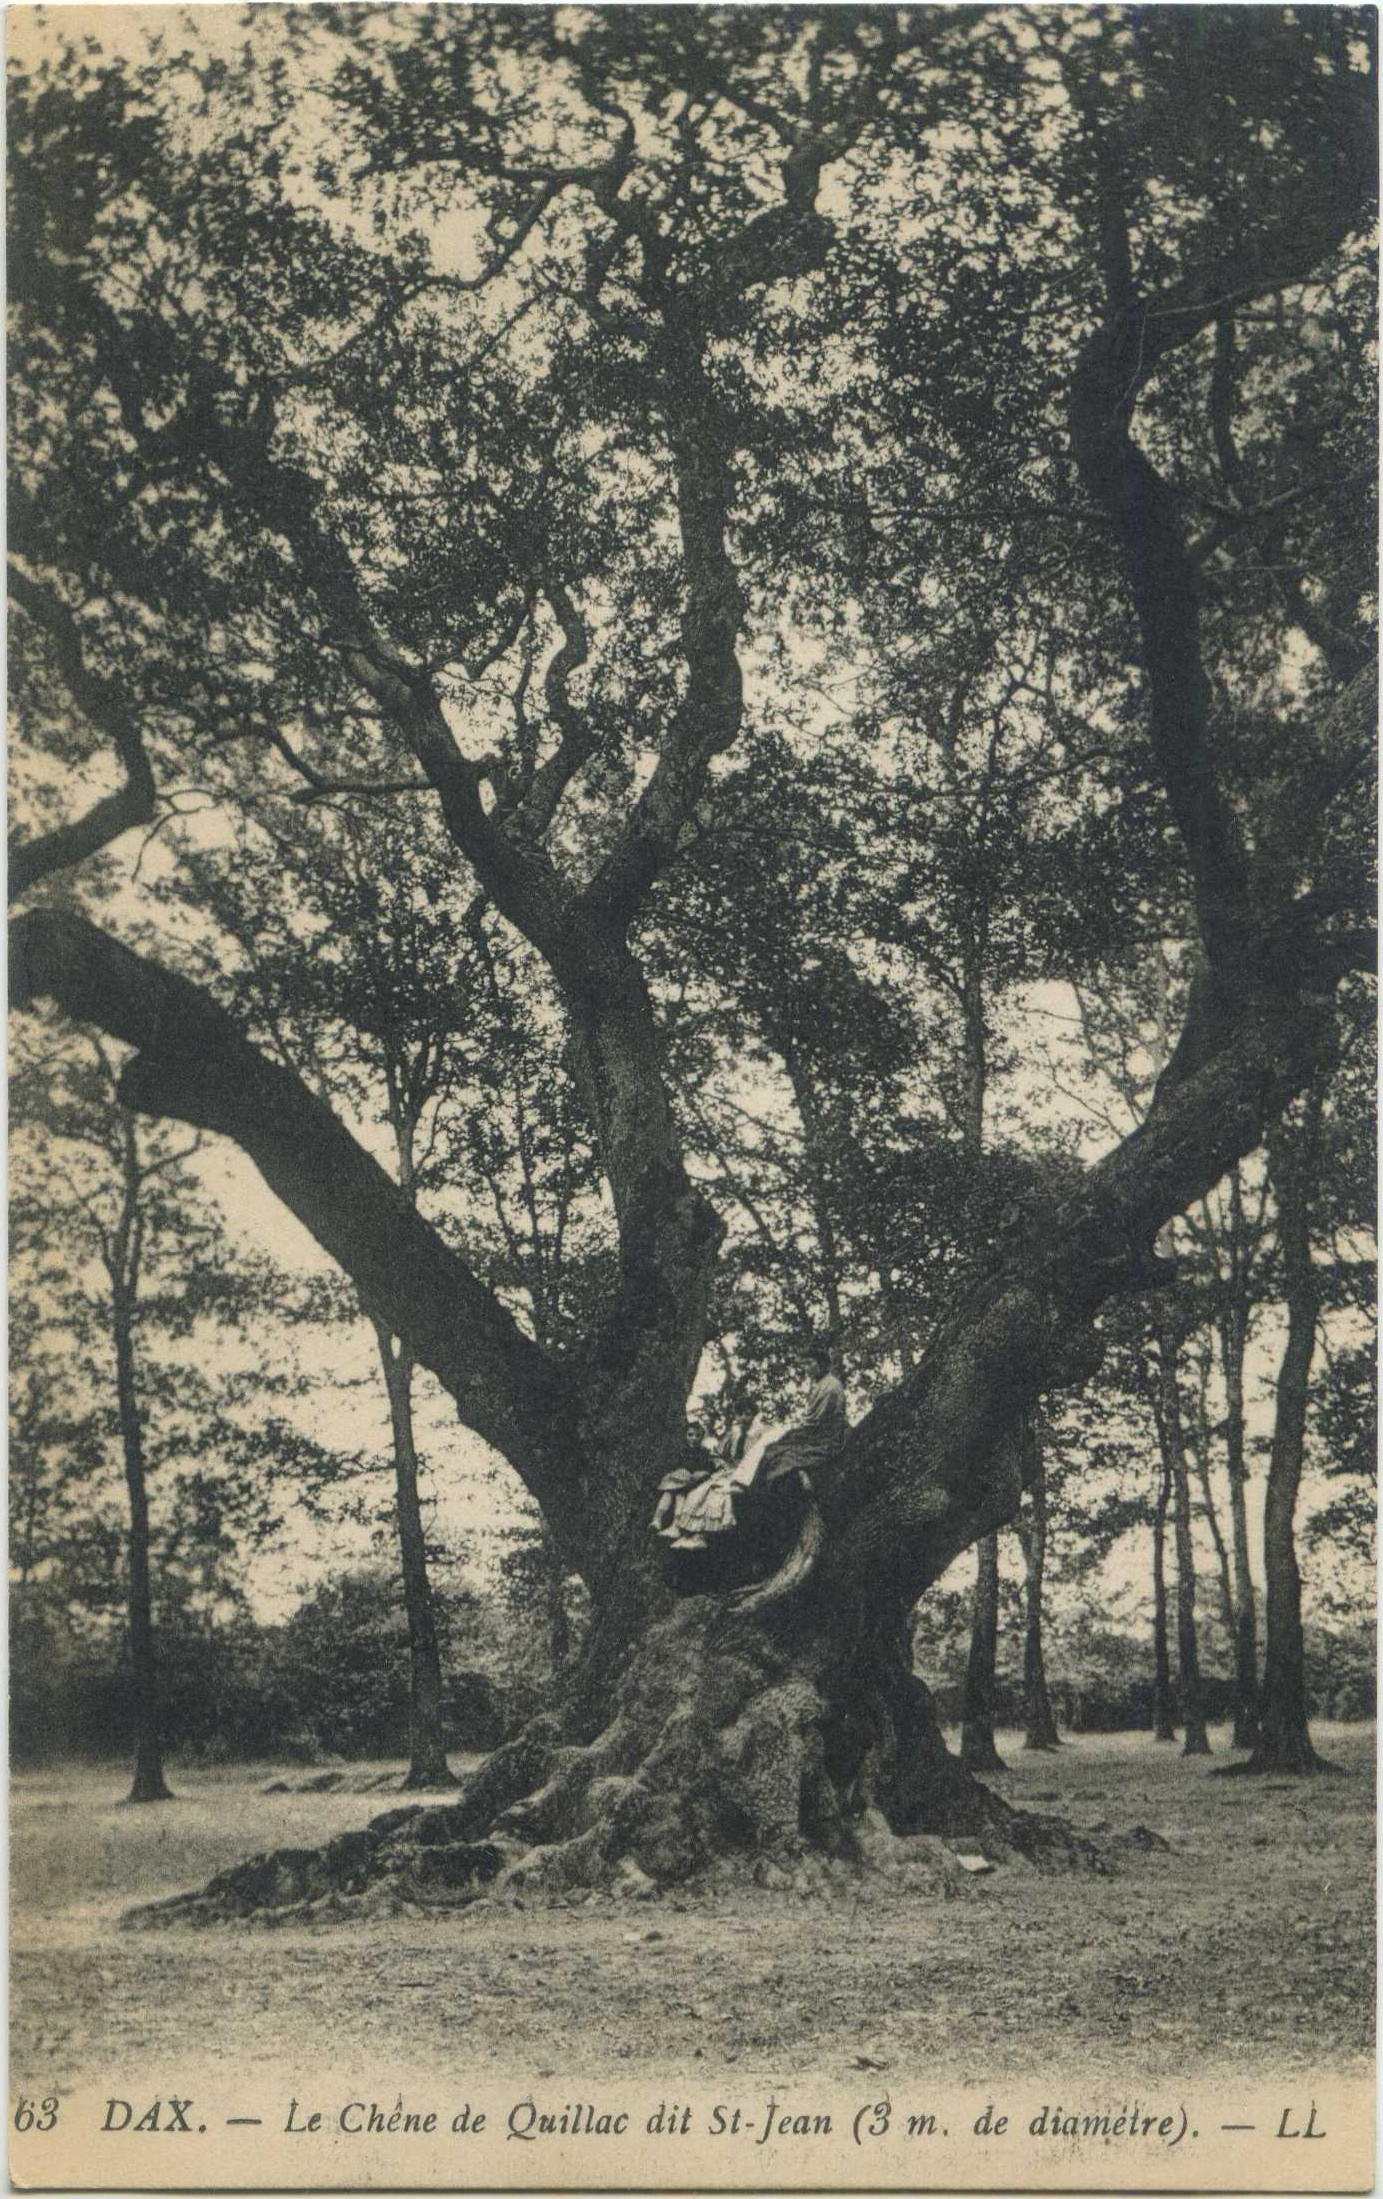 Dax - Le Chêne de Quillac dit St-Jean (3 m. de diamètre).